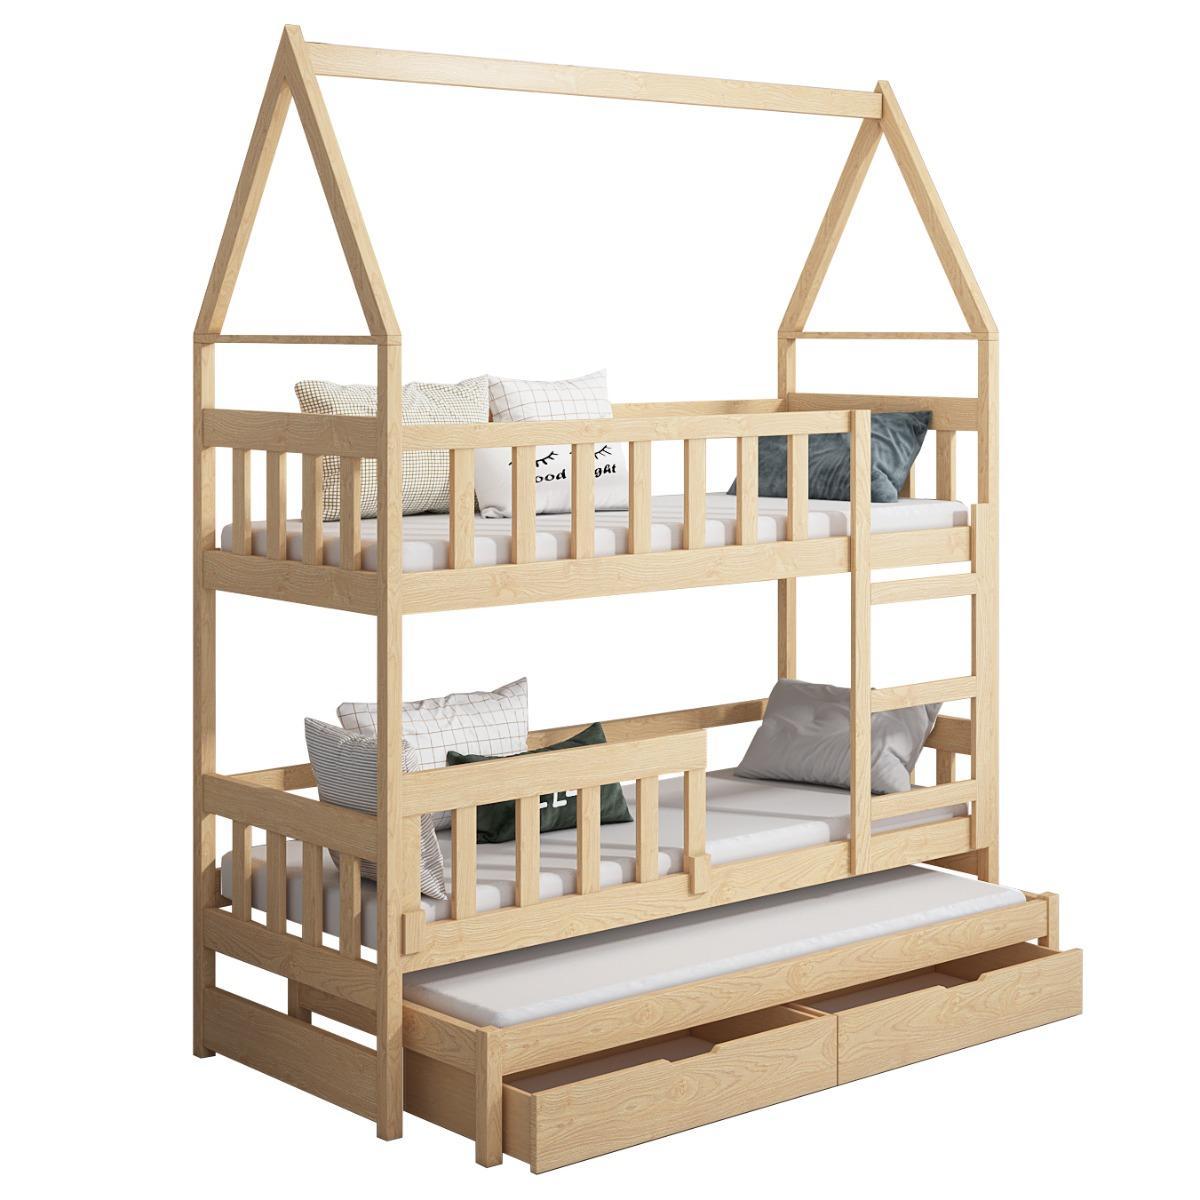 Łóżko piętrowe DOMEK drewno białe miejsce do spania dla 3 osób + materace piankowe 180x75 cm w zestawie do pokoju dziecka 5 Full Screen